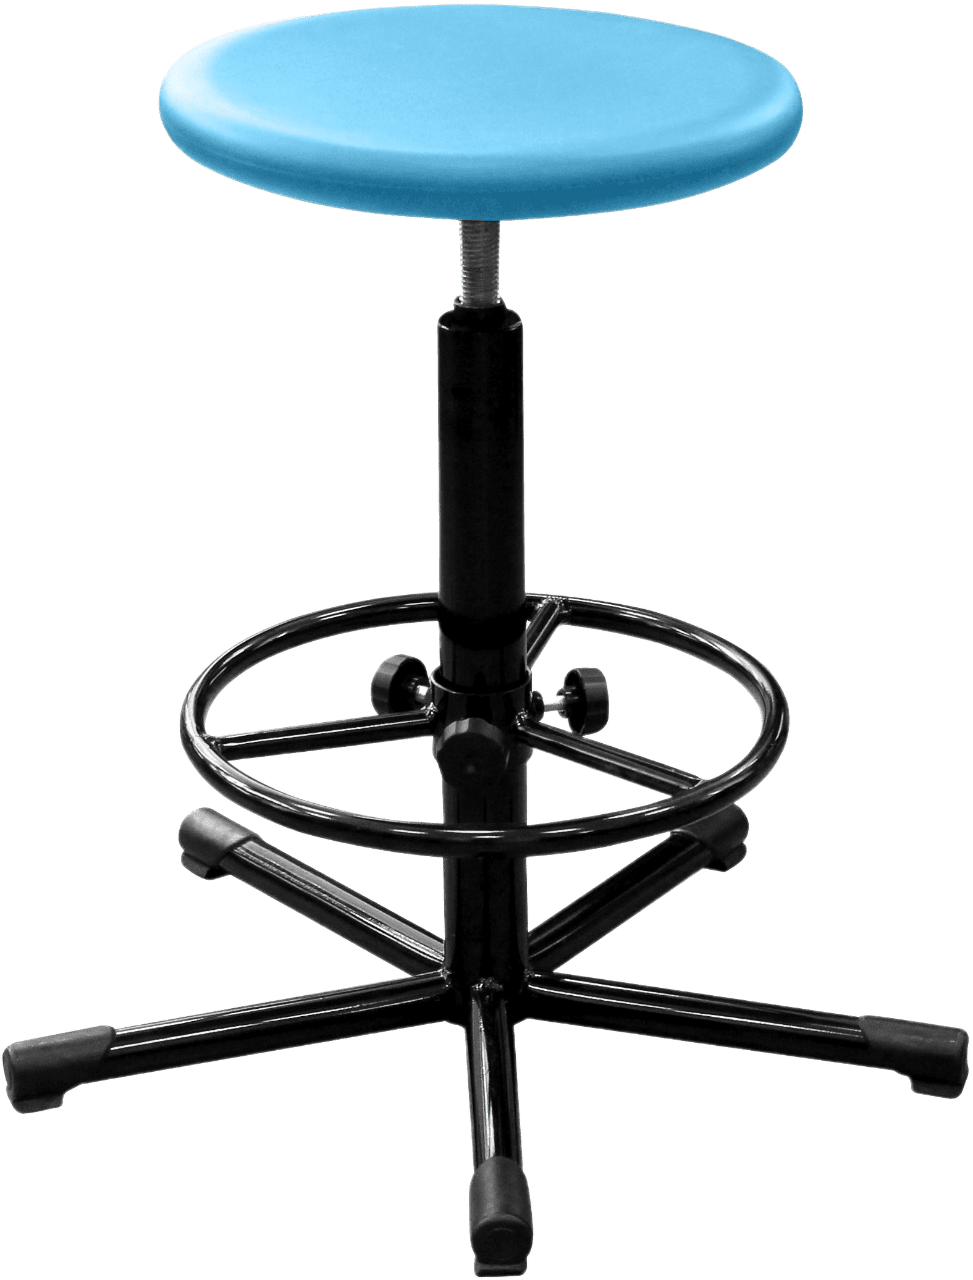 Табурет полиуретановый медицинский Т09 с круглым сиденьем голубого цвета